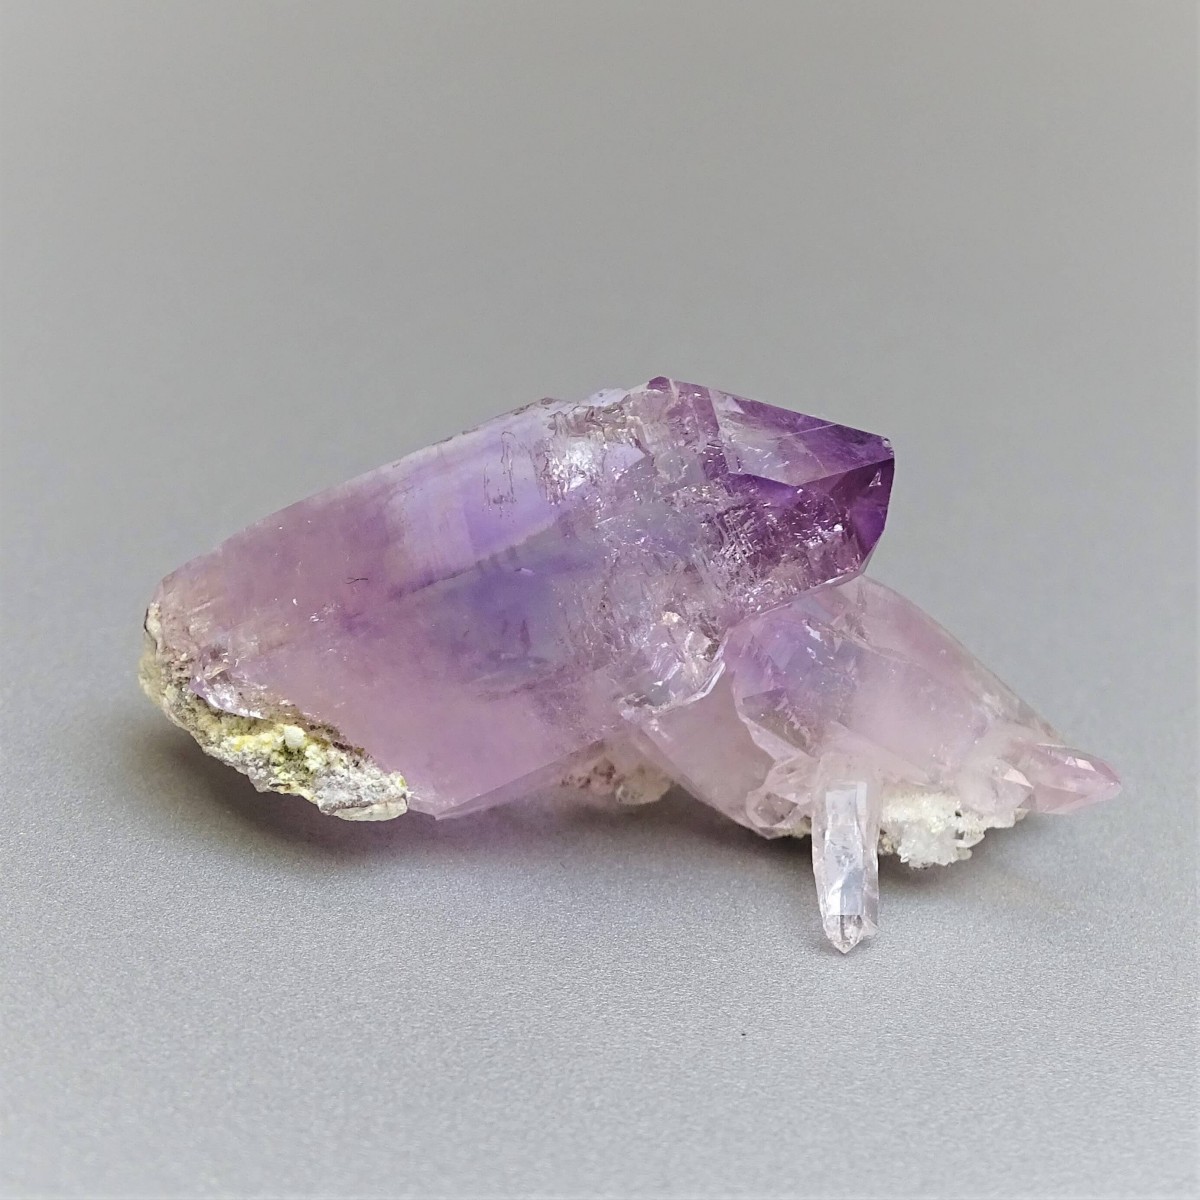 Amethyst natürliche Kristalle 13,2g, Mexiko